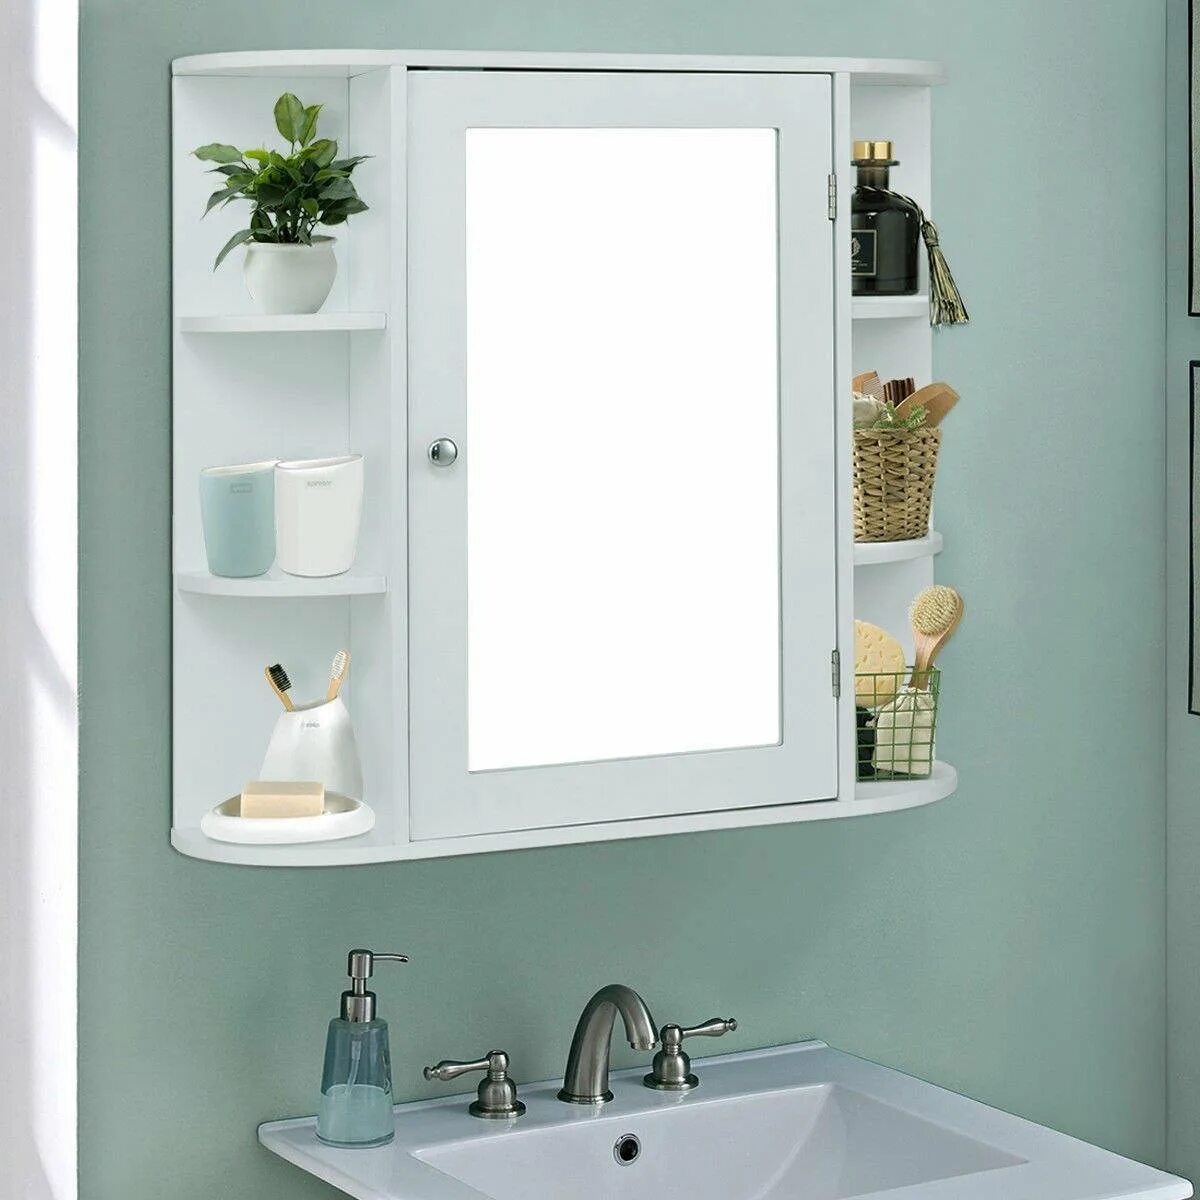 Полка с зеркалом купить ванну. Зеркало в ванную с полкой. Зеркало в ванную с полочкой. Зеркало с полками в ванную комнату. Зеркало в ванную с полоской.